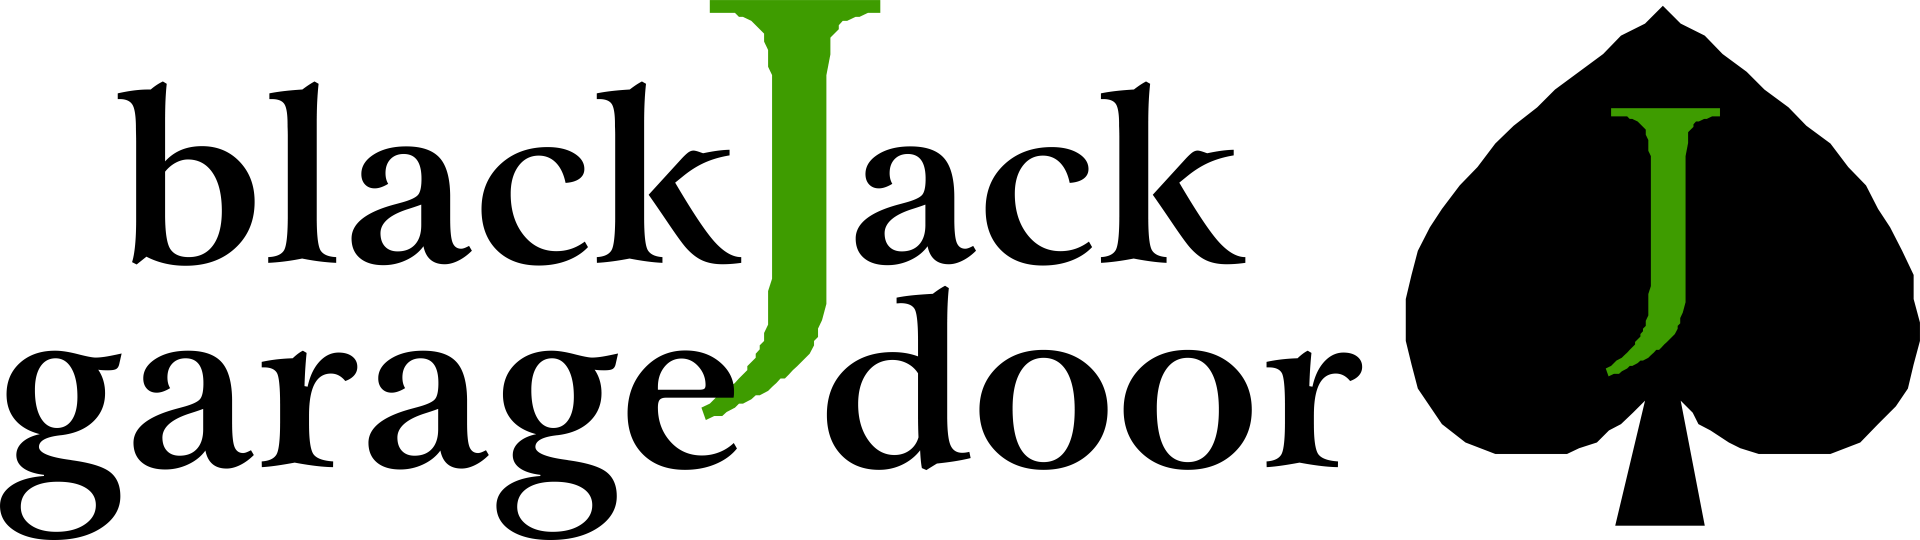 black jack garage door logo with spade